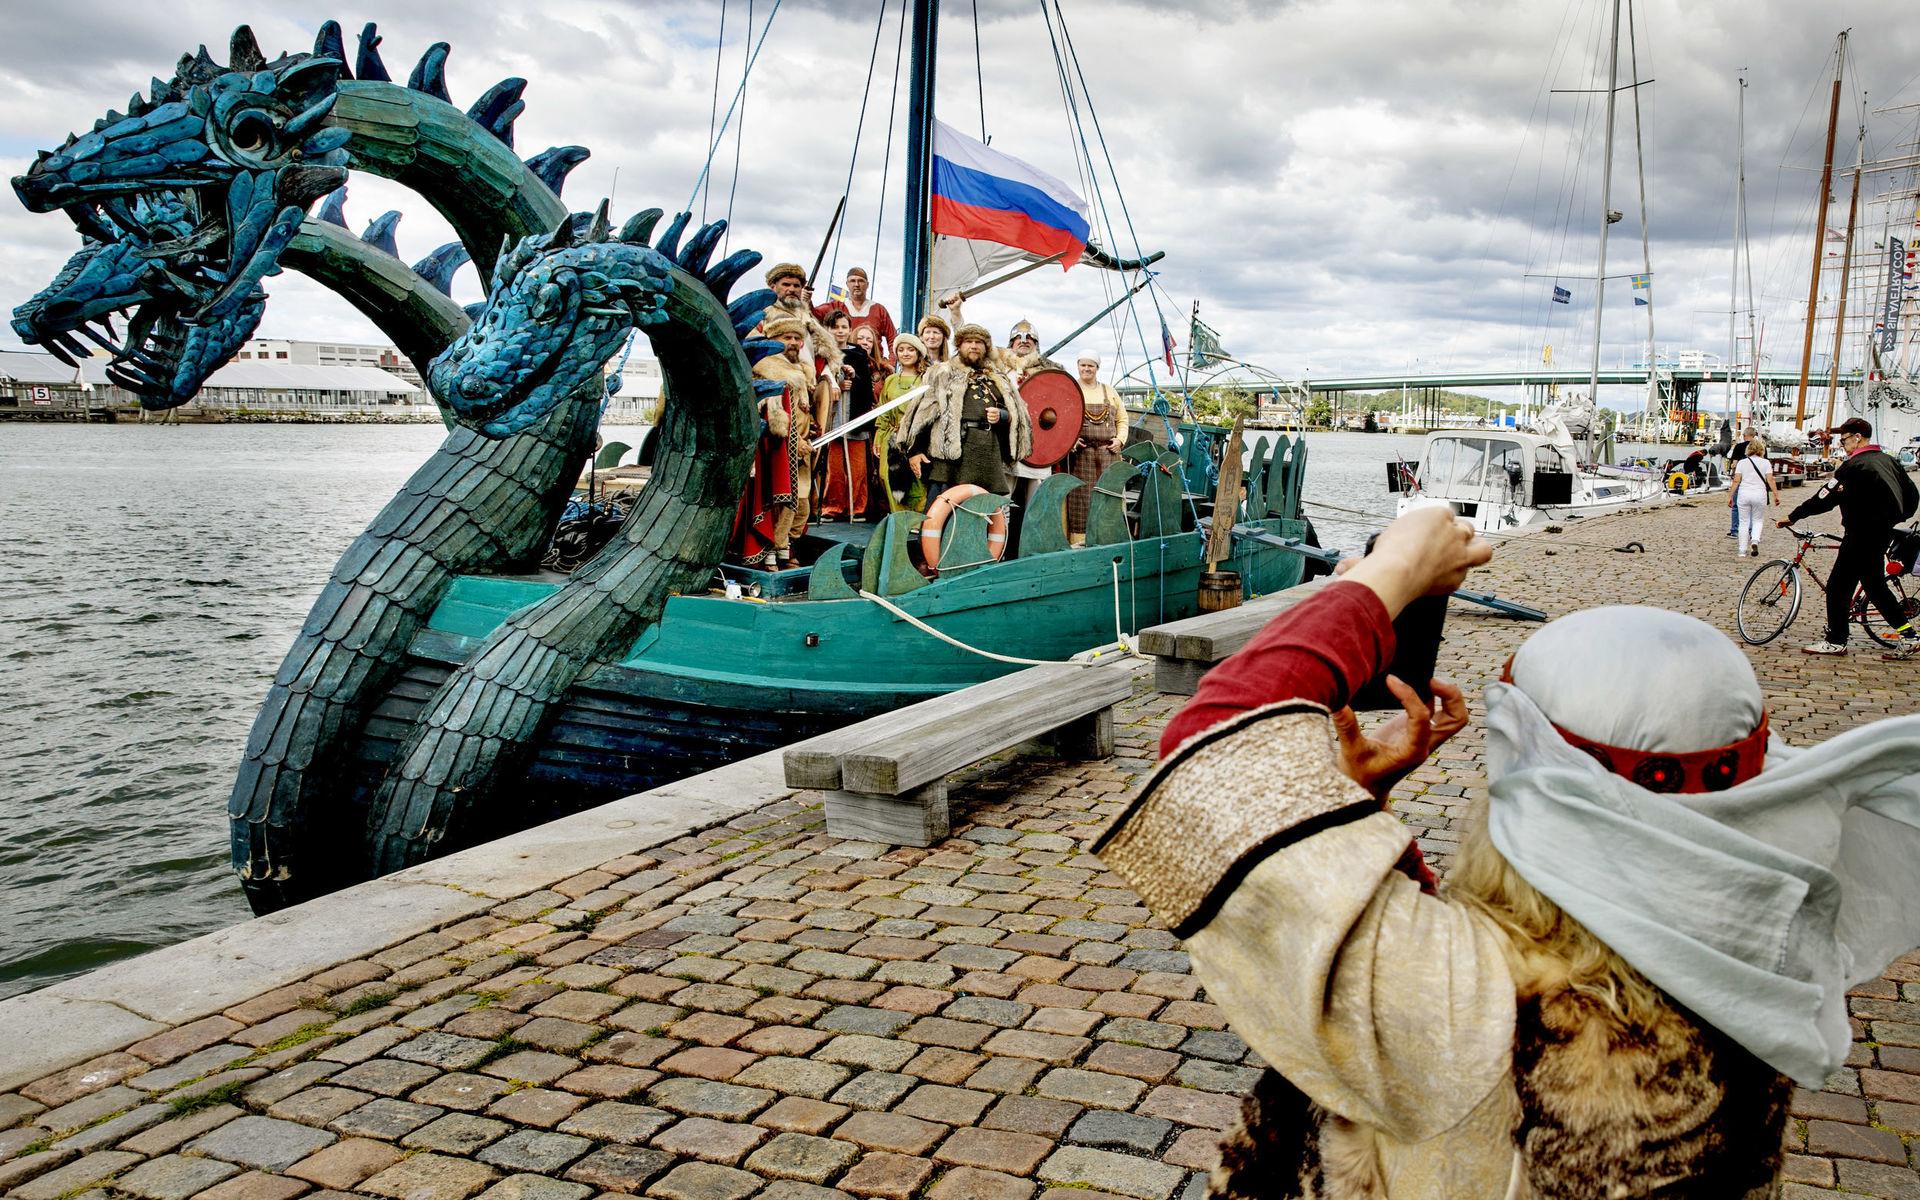 Vikingaskeppet Zmej Gorýnytj gästade Göteborg på sin sommarresa i Östersjön och på västkusten. Skeppet seglar i farvattnet av de tre vikingarna Rurik och hans två bröder Sineus och Truvor. Rurik anses vara skaparen av det ryska riket och sägs ha kommit från svenska Roslagen. 